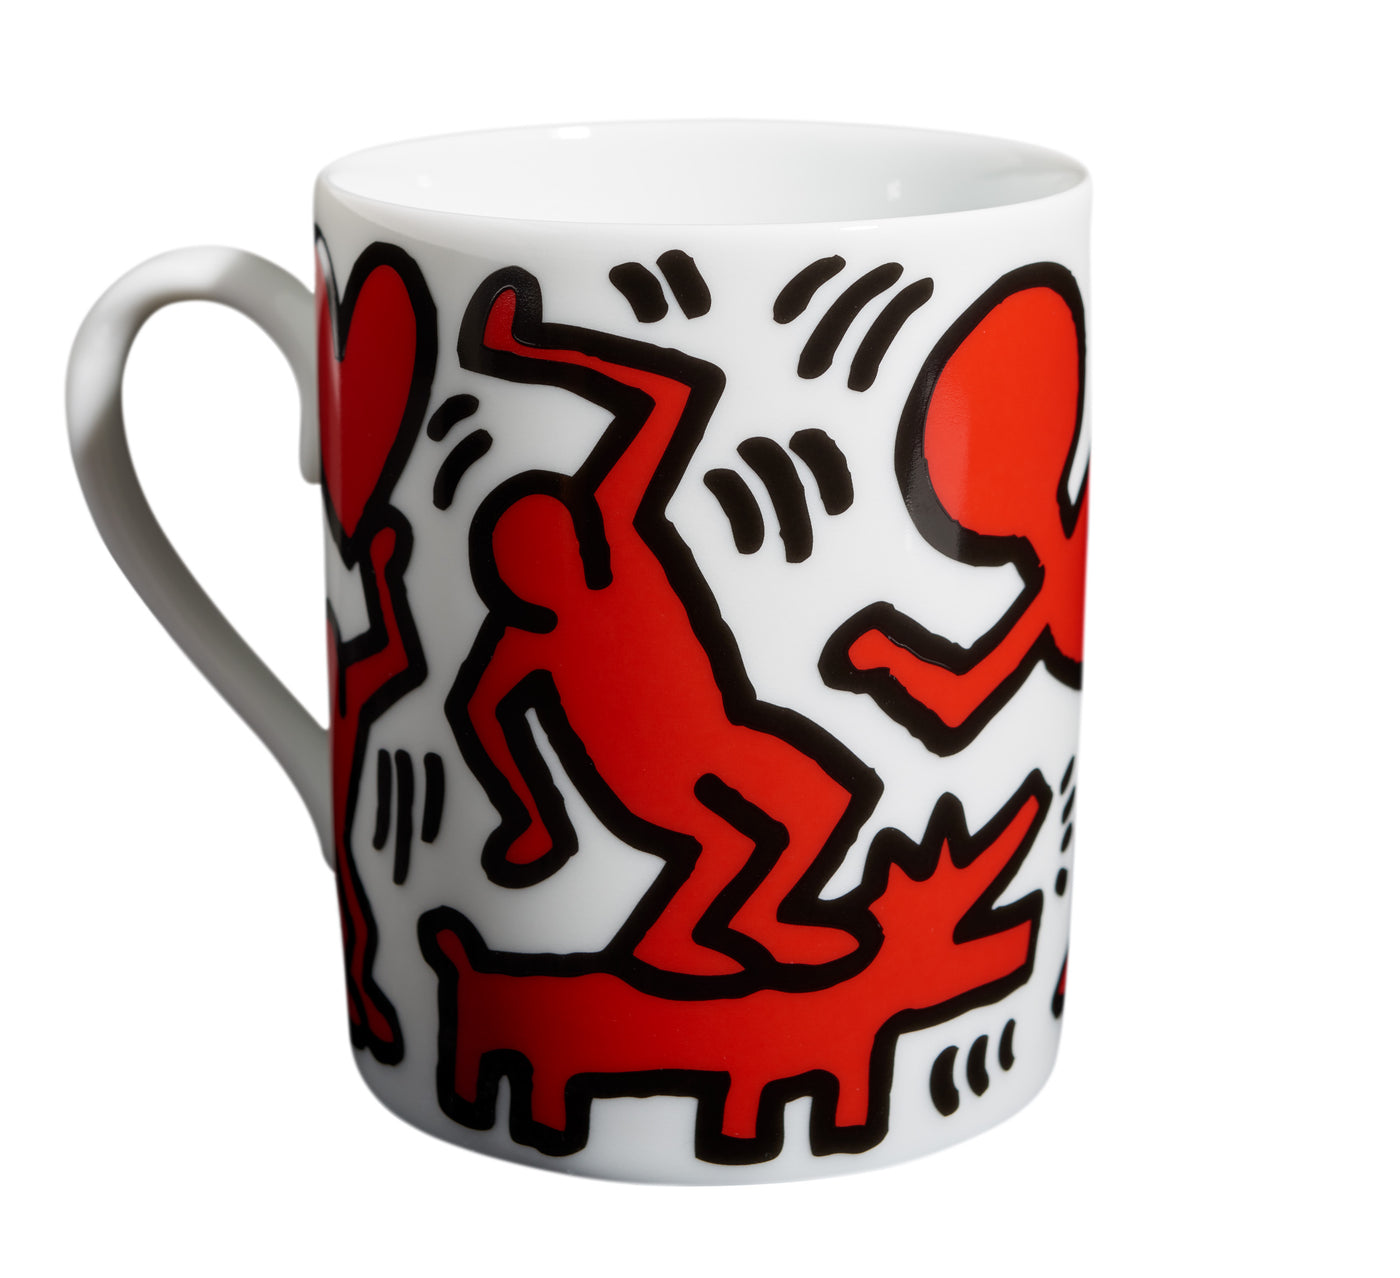 Haring Mug Red/White